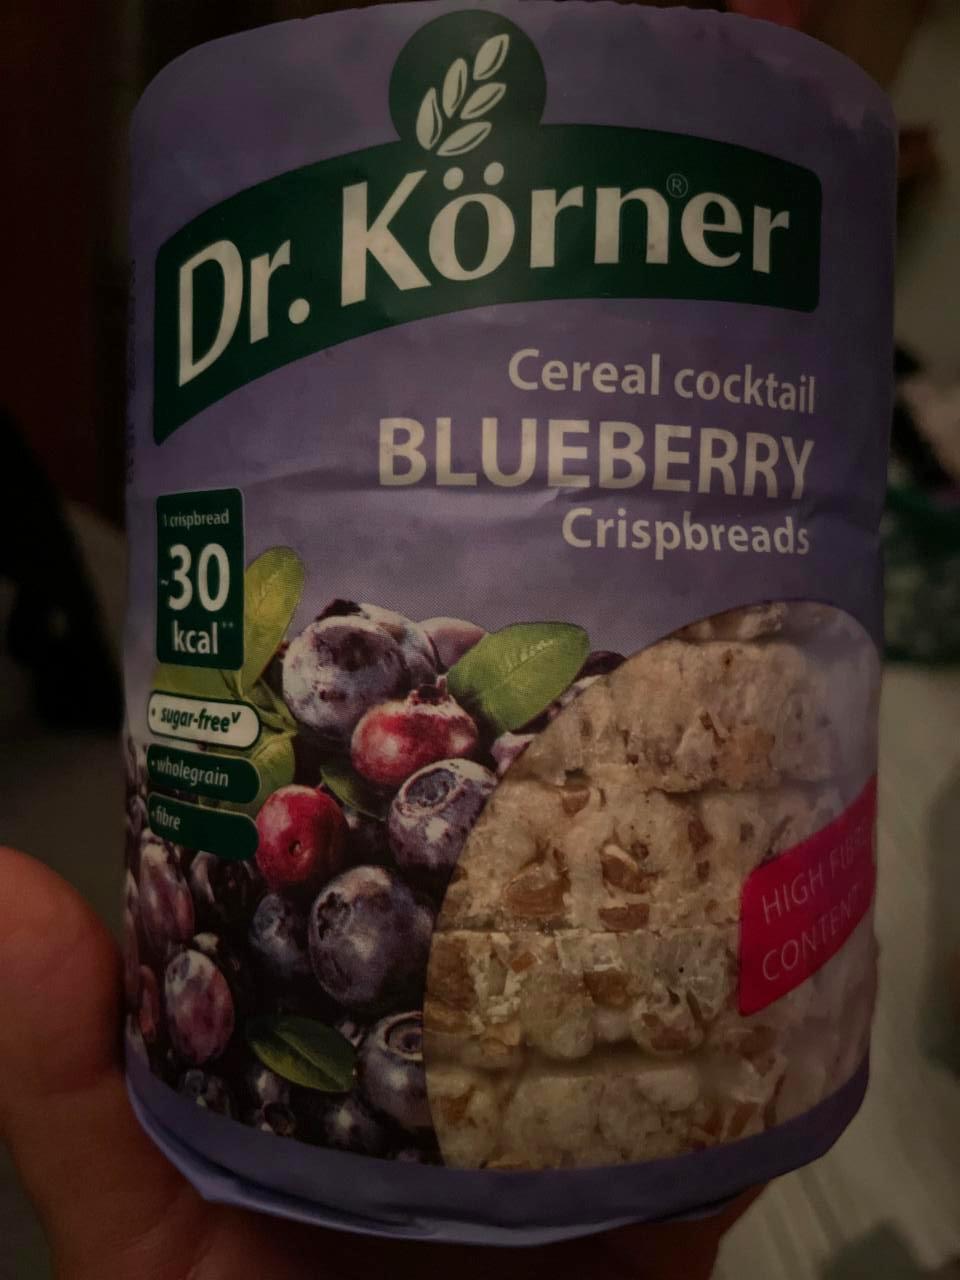 Fotografie - Cereal cocktail Blueberry Crispbread Dr.Körner